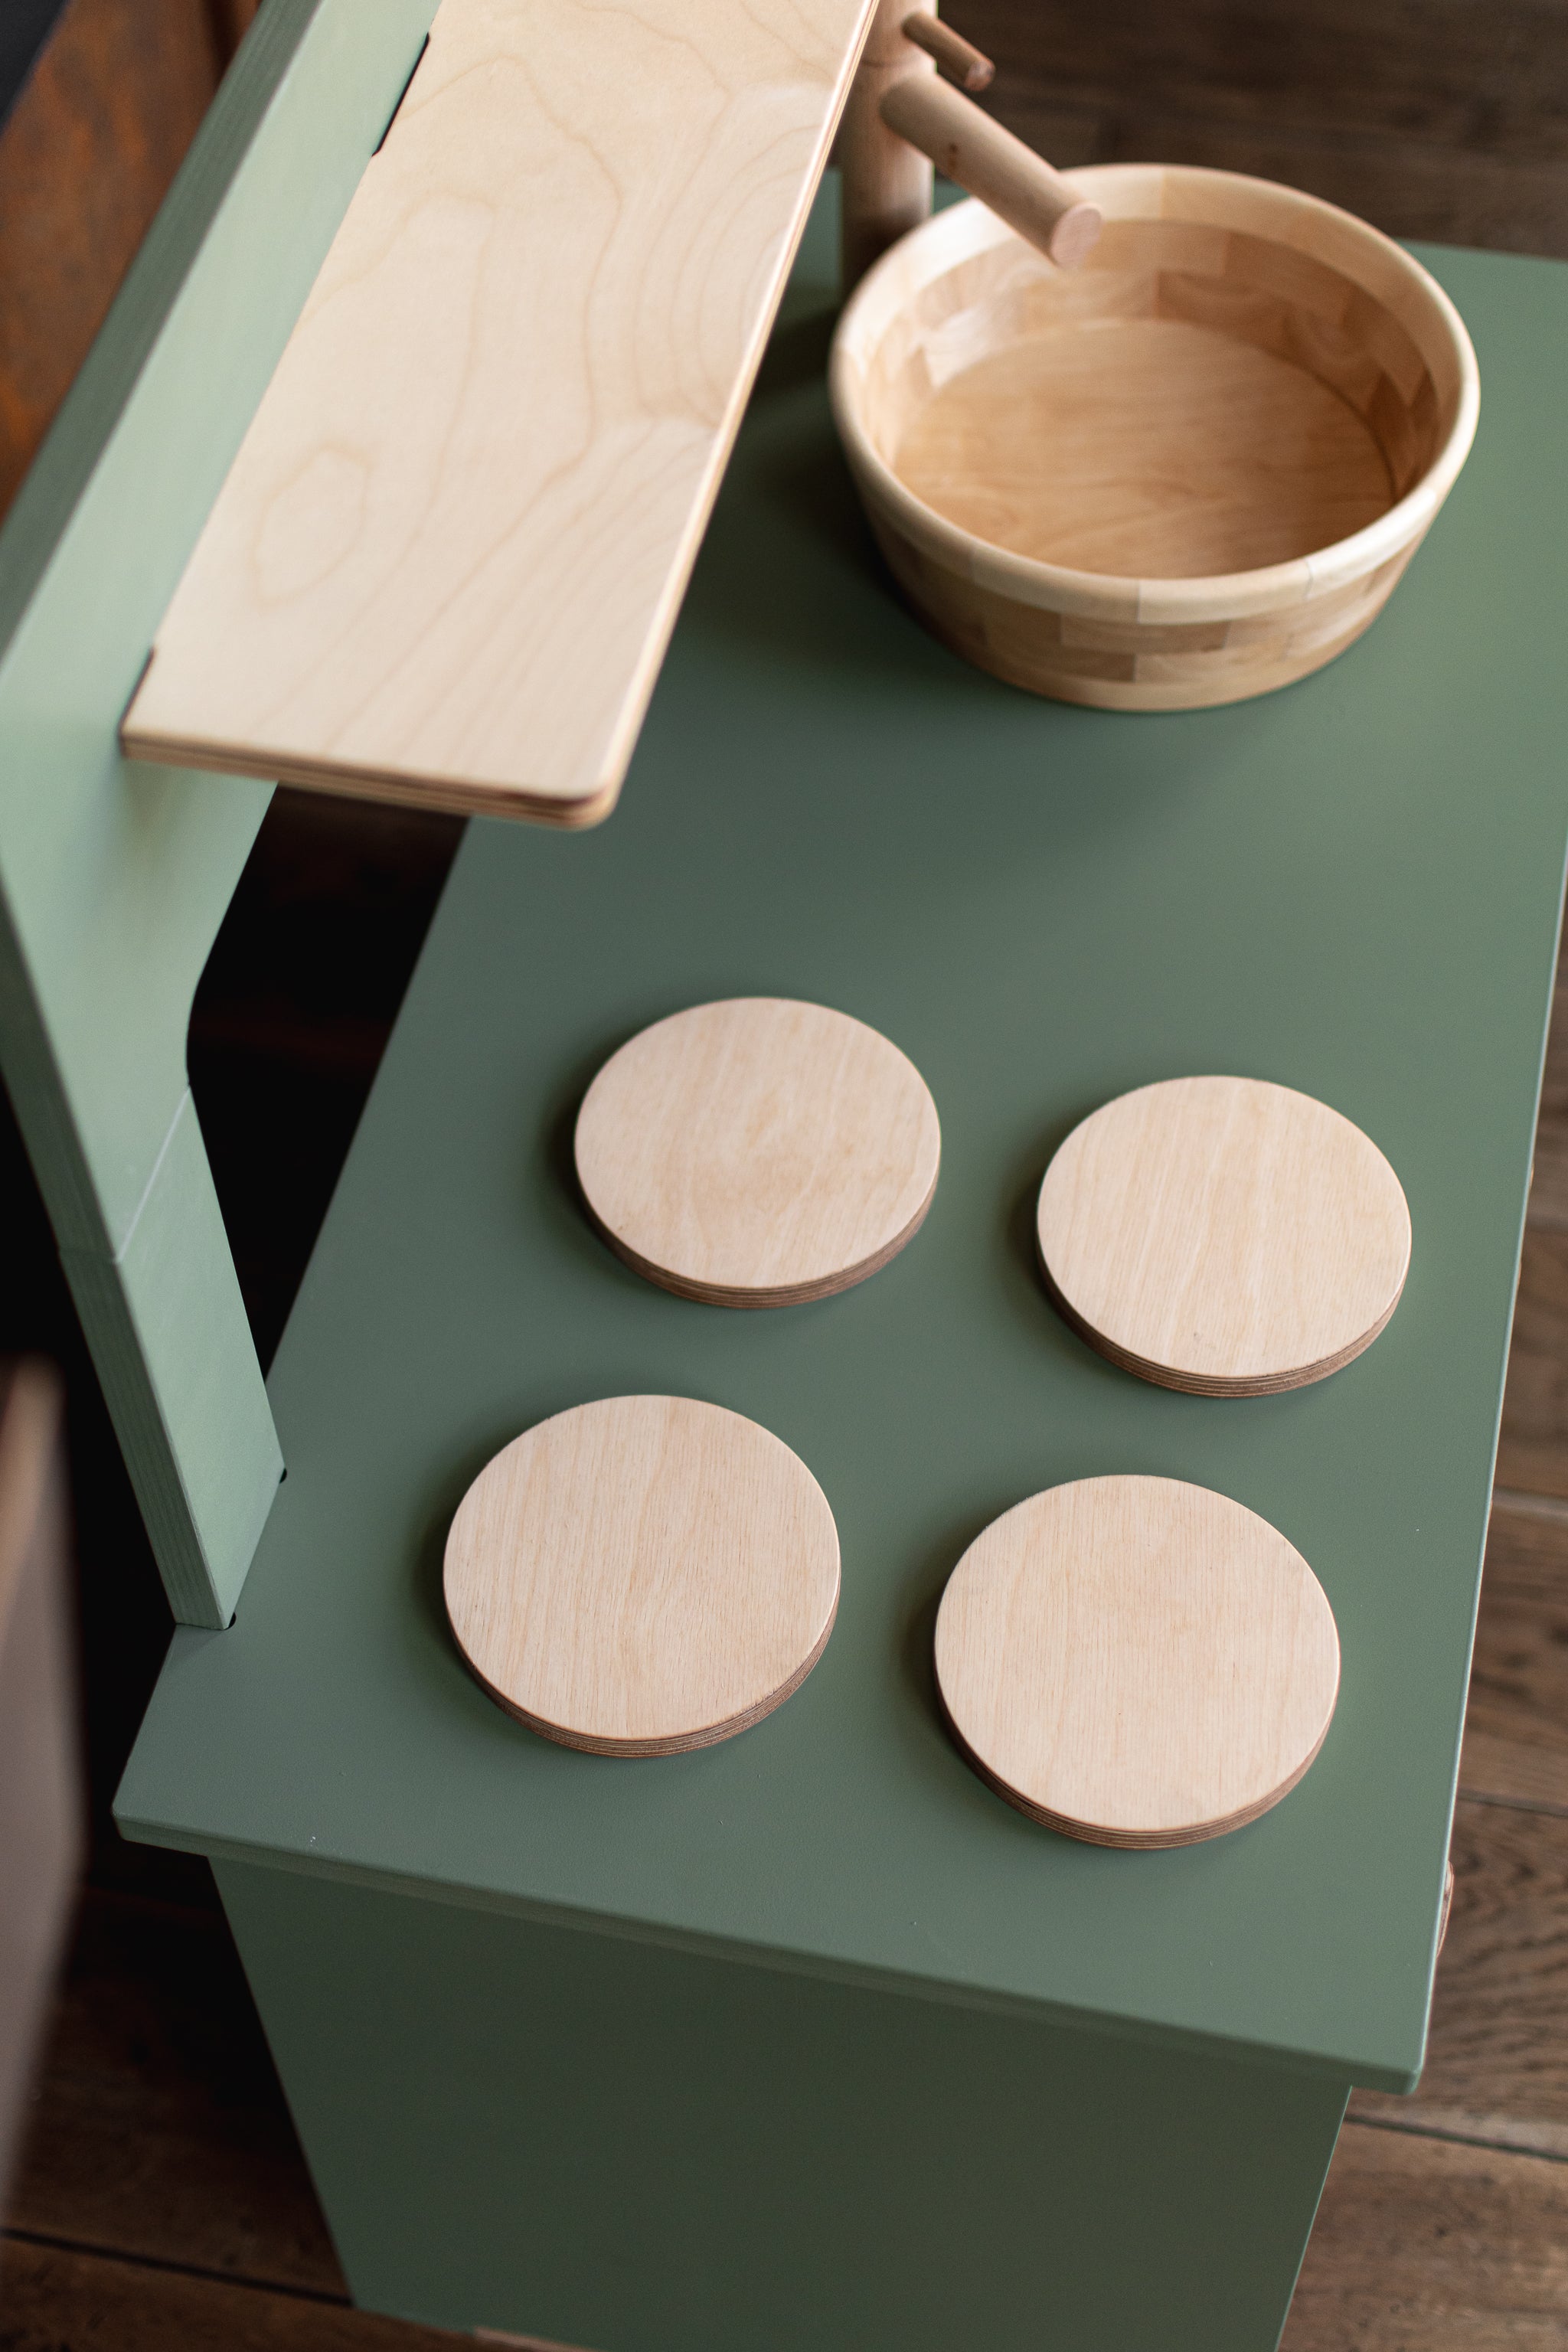 Midmini Kinderspielküche aus Holz - Spielend kochen wie die Großen